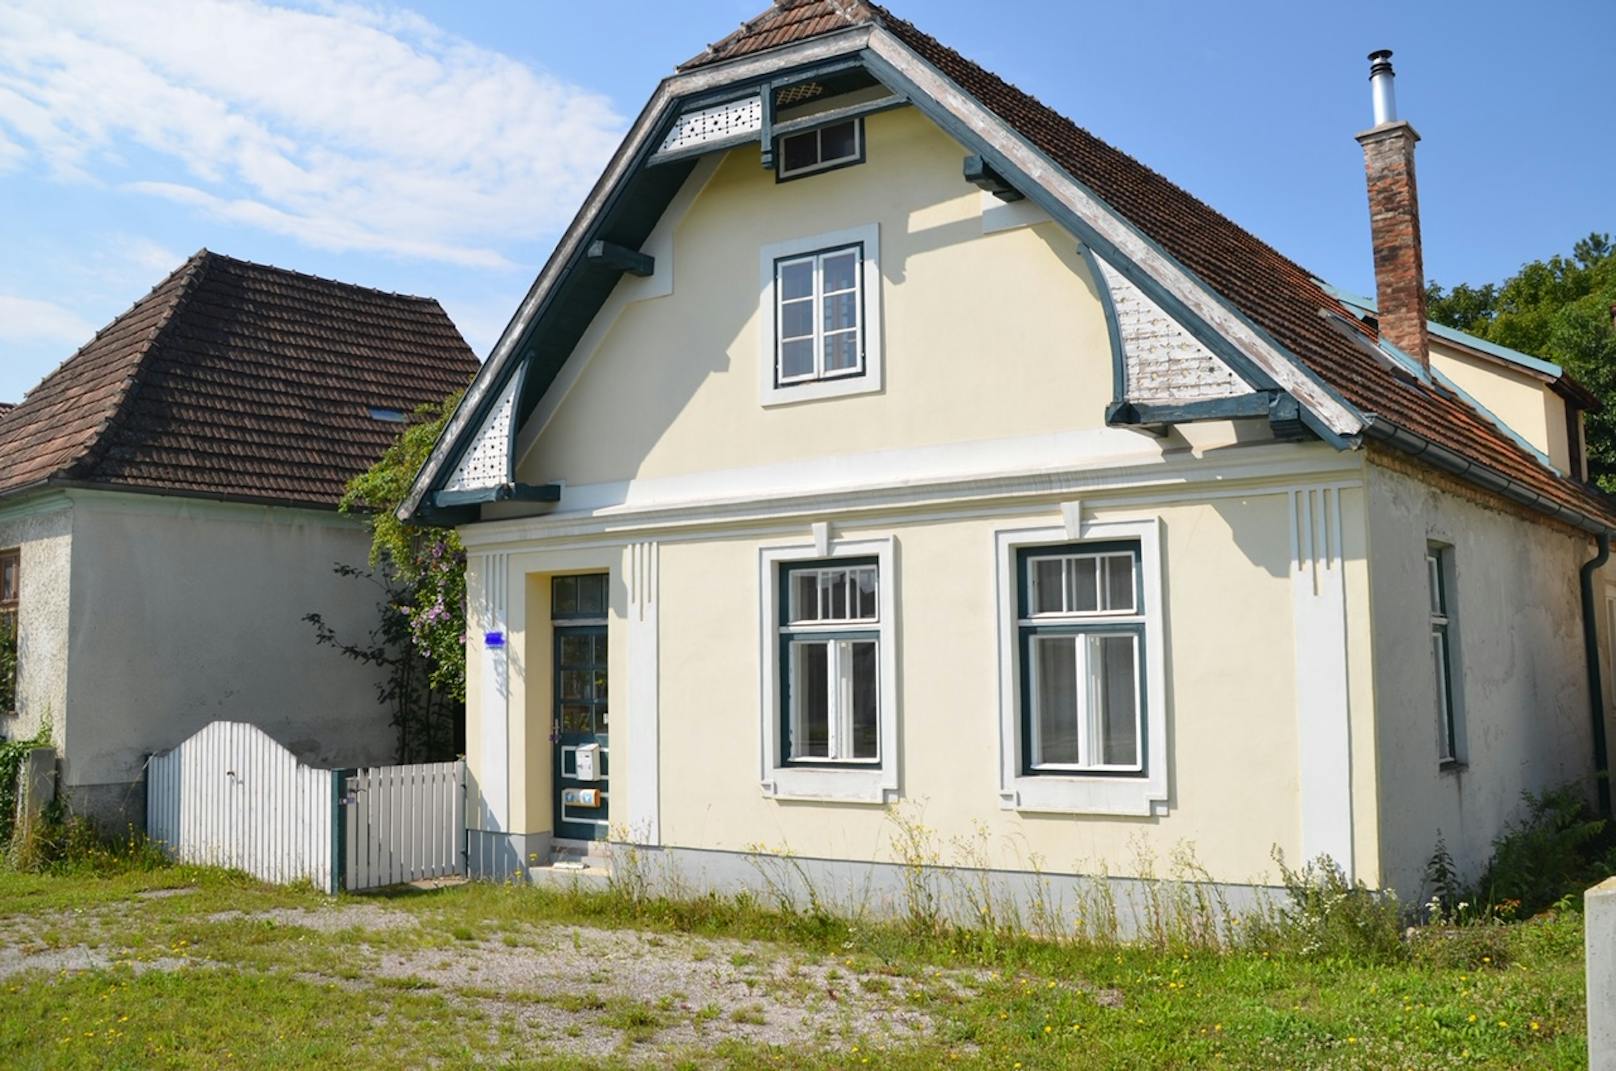 Eine weitere Immobilie der Familie in Strebersdorf wurde von den Ermittlern amtlich versiegelt